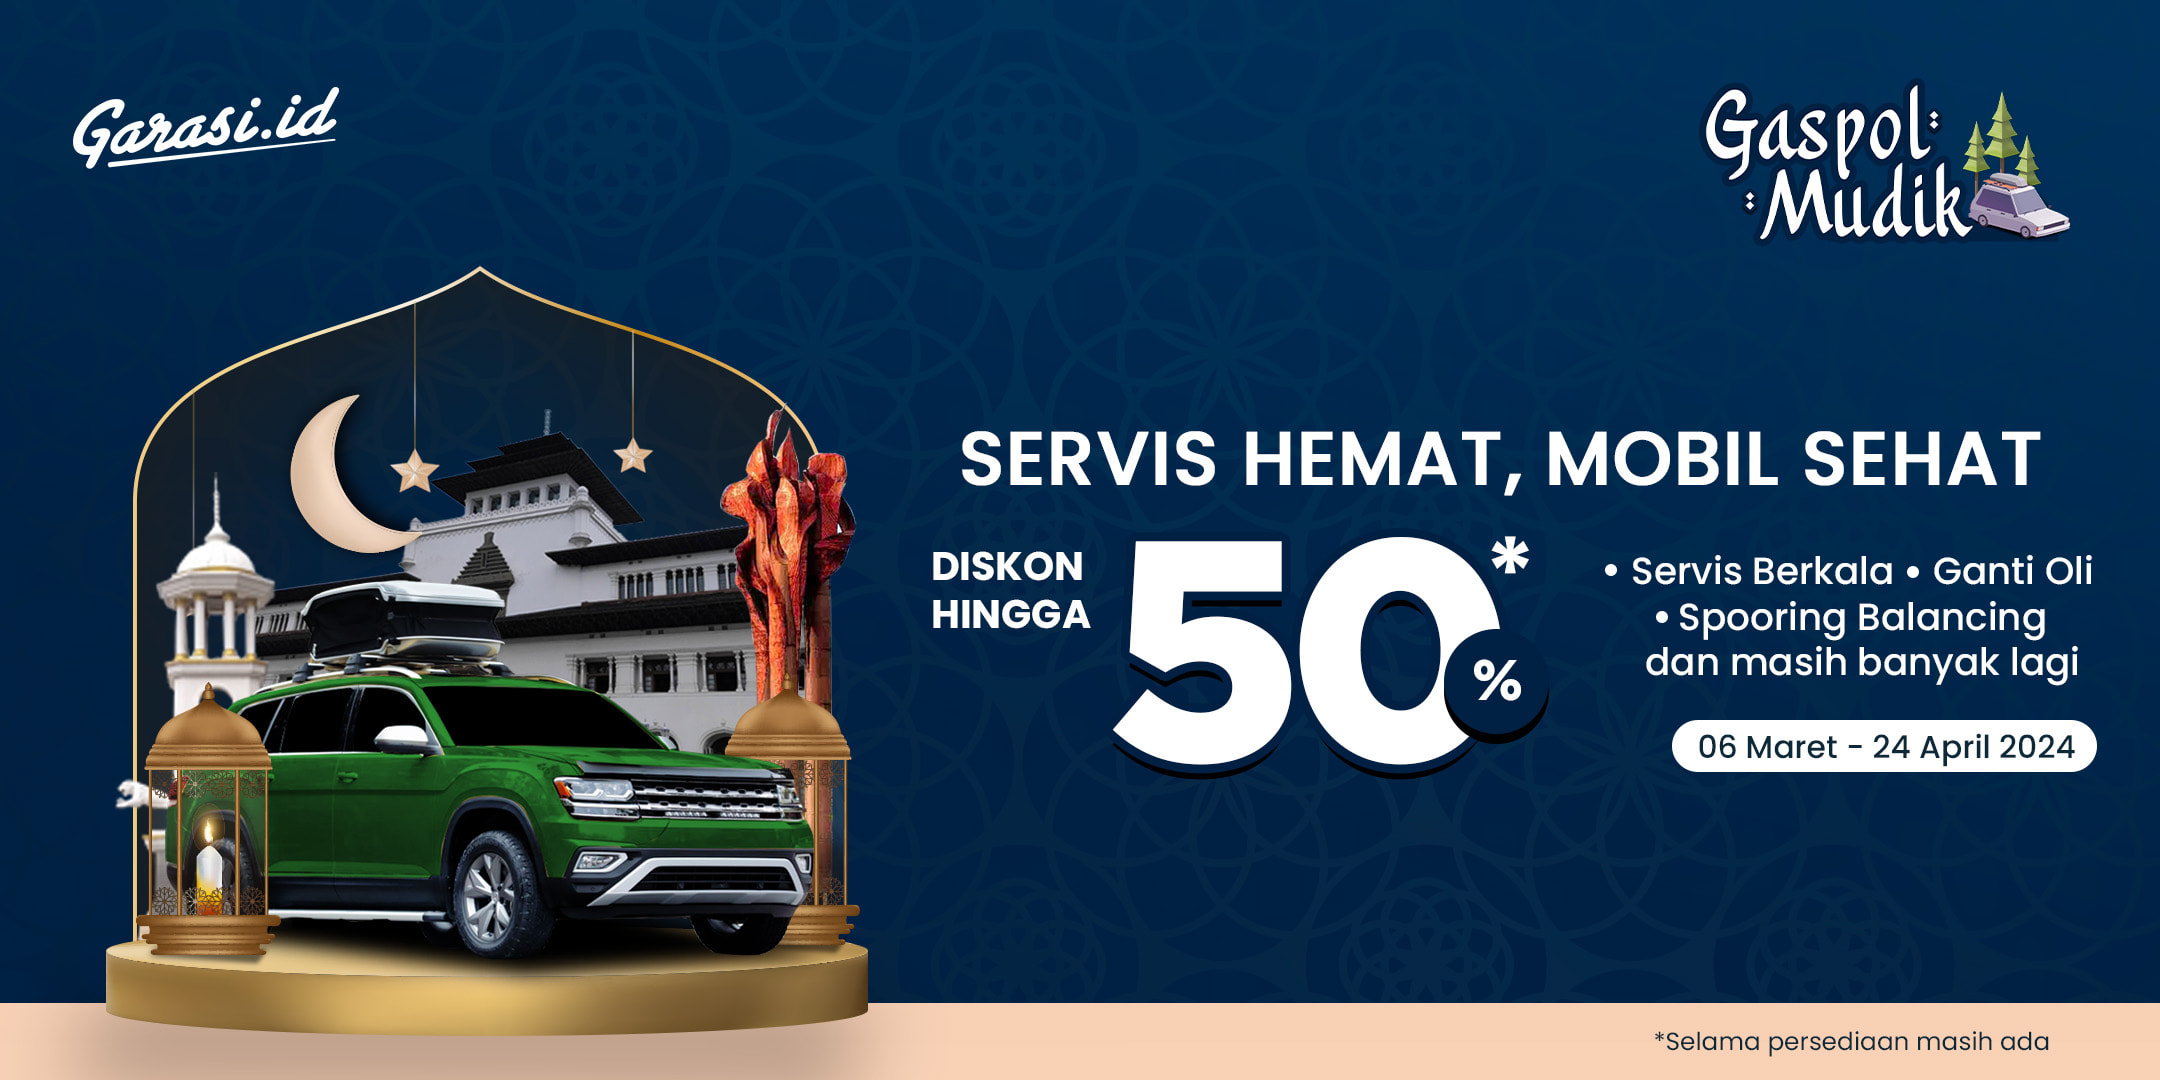 **Gaspol Ramadan** 
Diskon hingga 50% untuk Jasa Servis dan Perawatan Mobil Khusus Area **Jawa Barat (Bandung & Cirebon)**.